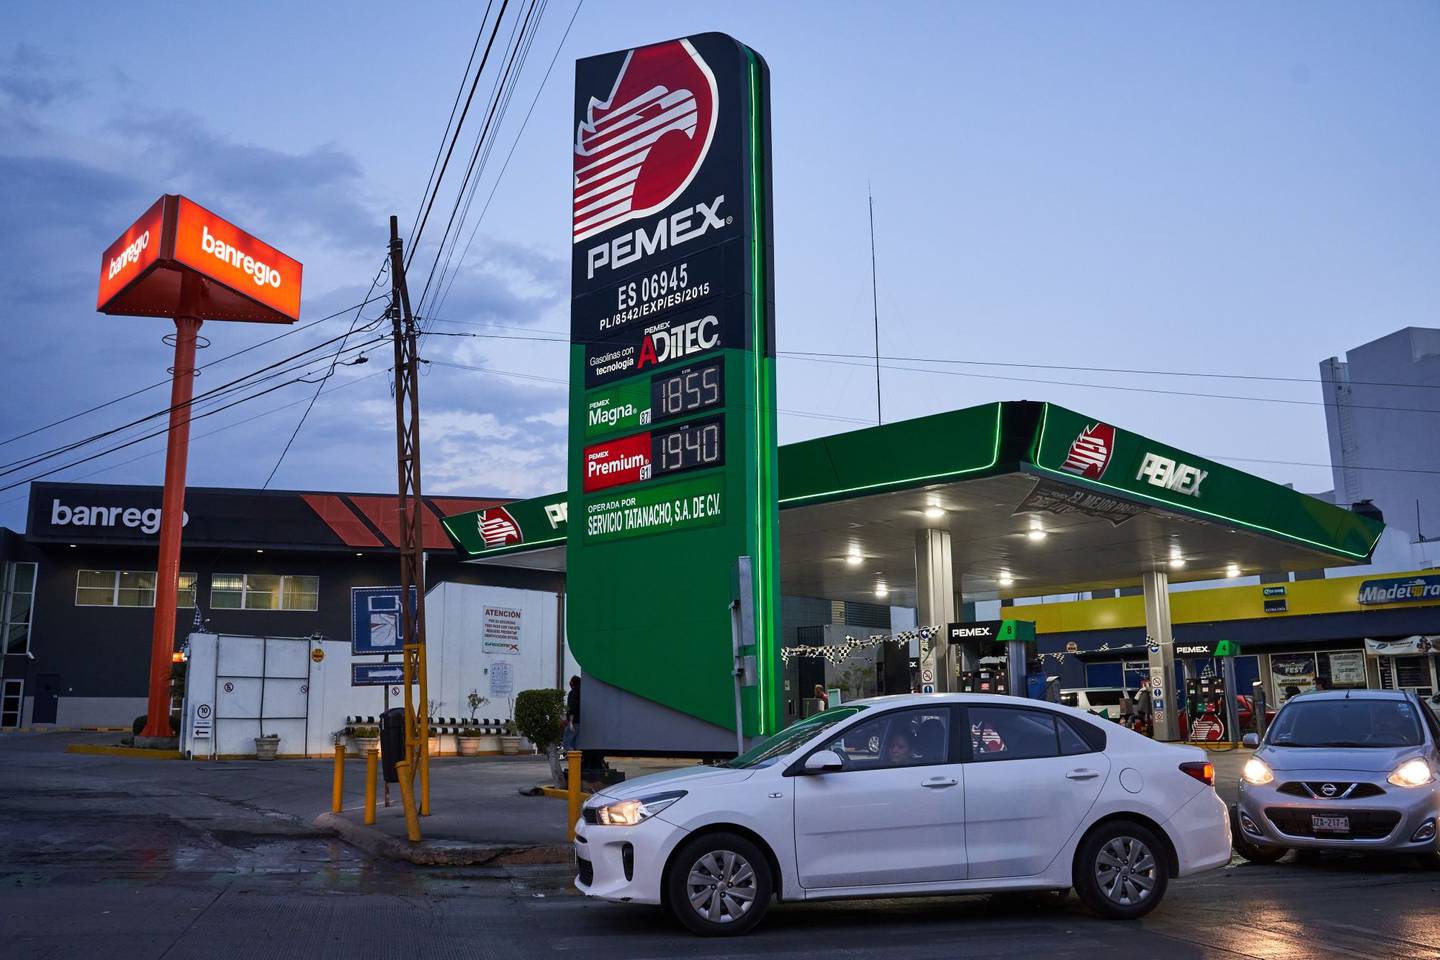 Vehículos pasan frente a una gasolinera de Petróleos Mexicanos (Pemex) San Luis Potosí, México.